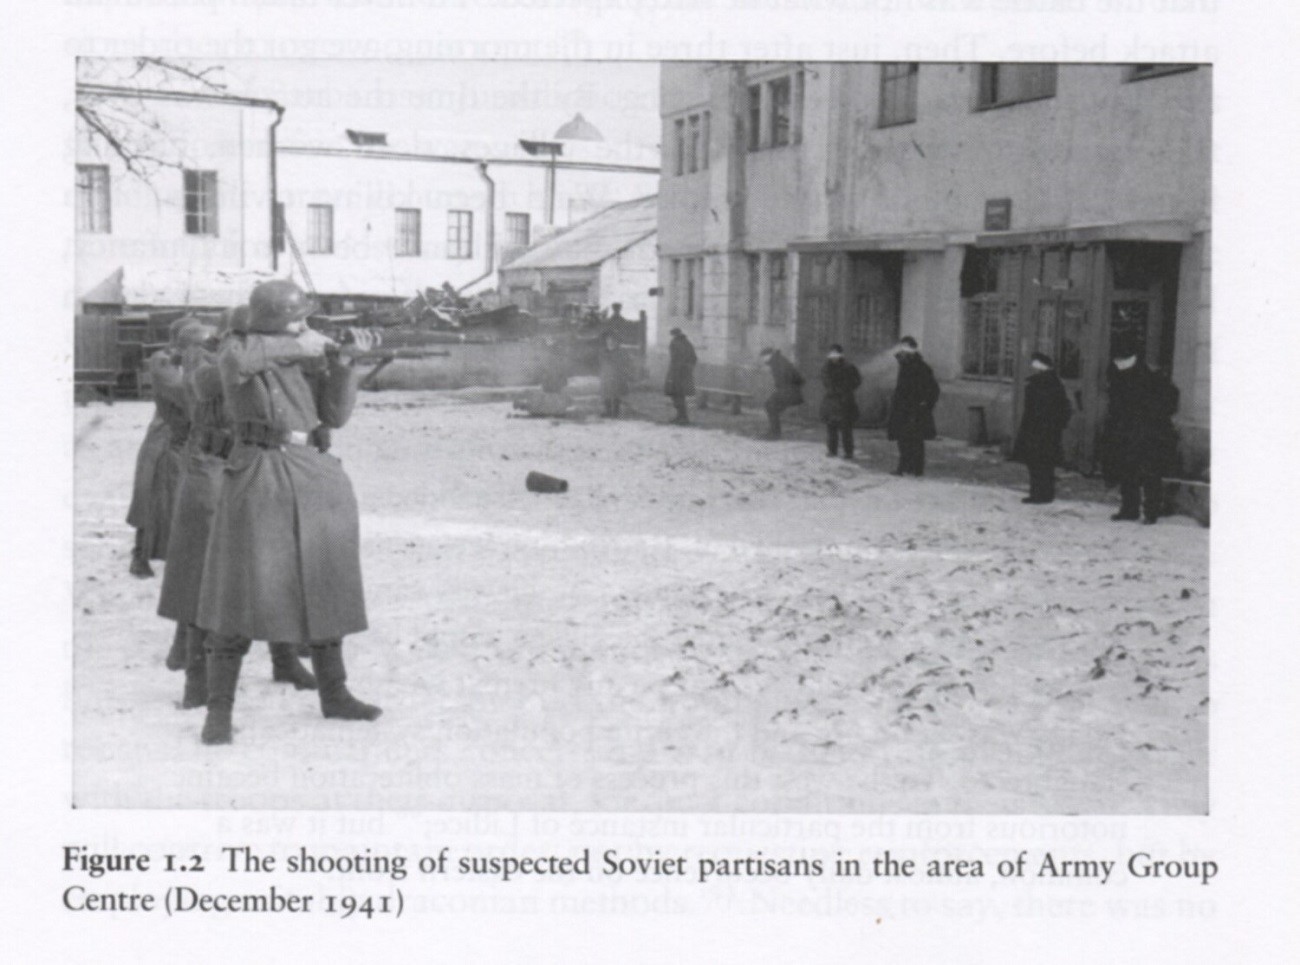 Njemački okupatori strijeljaju partizane.

